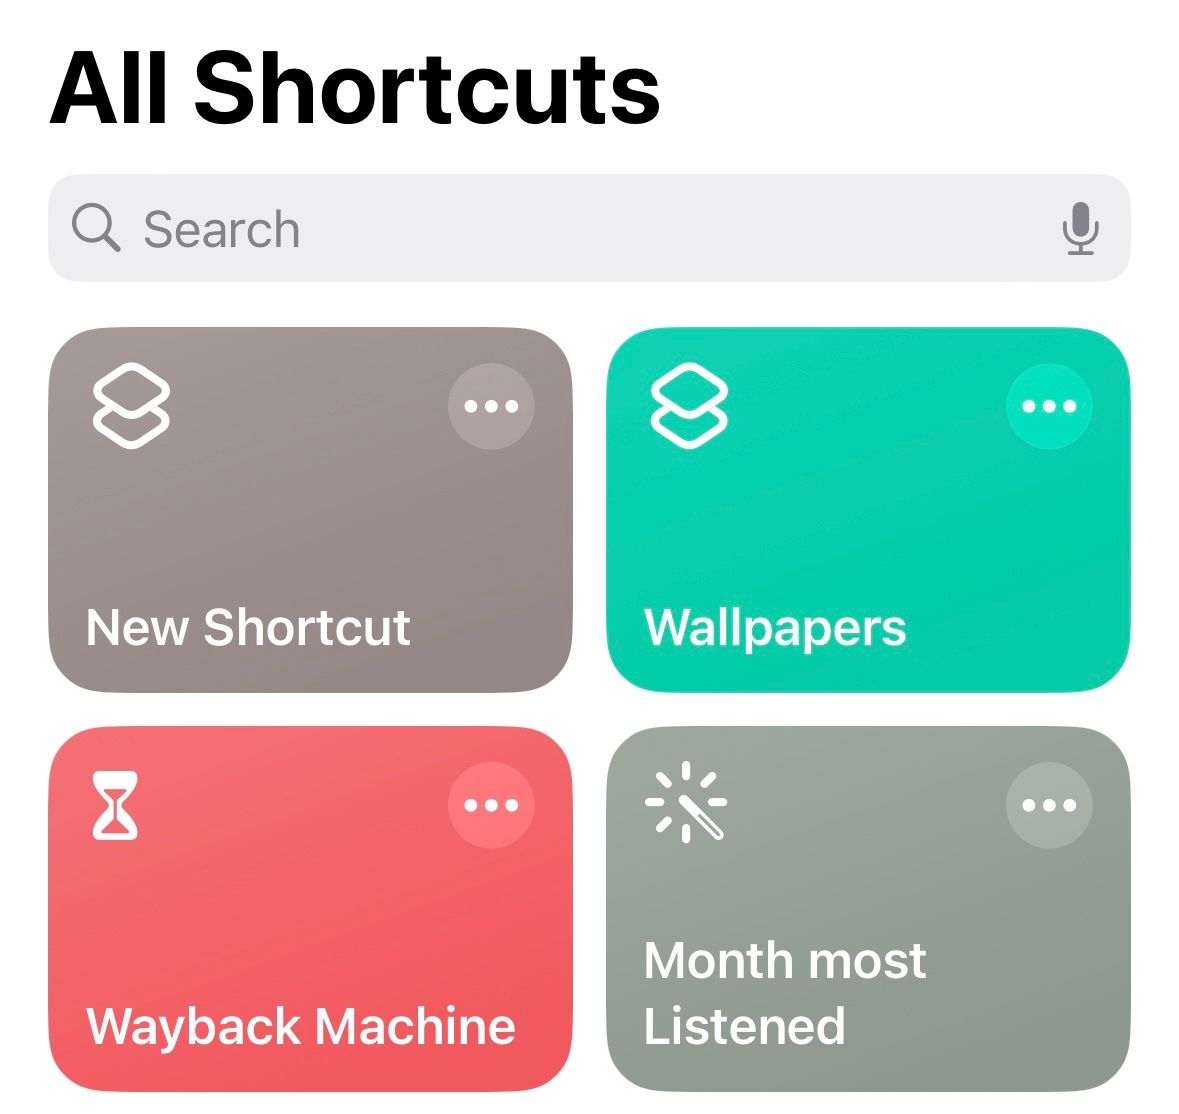 "All Shortcuts" menu in the iPhone Shortcuts app.